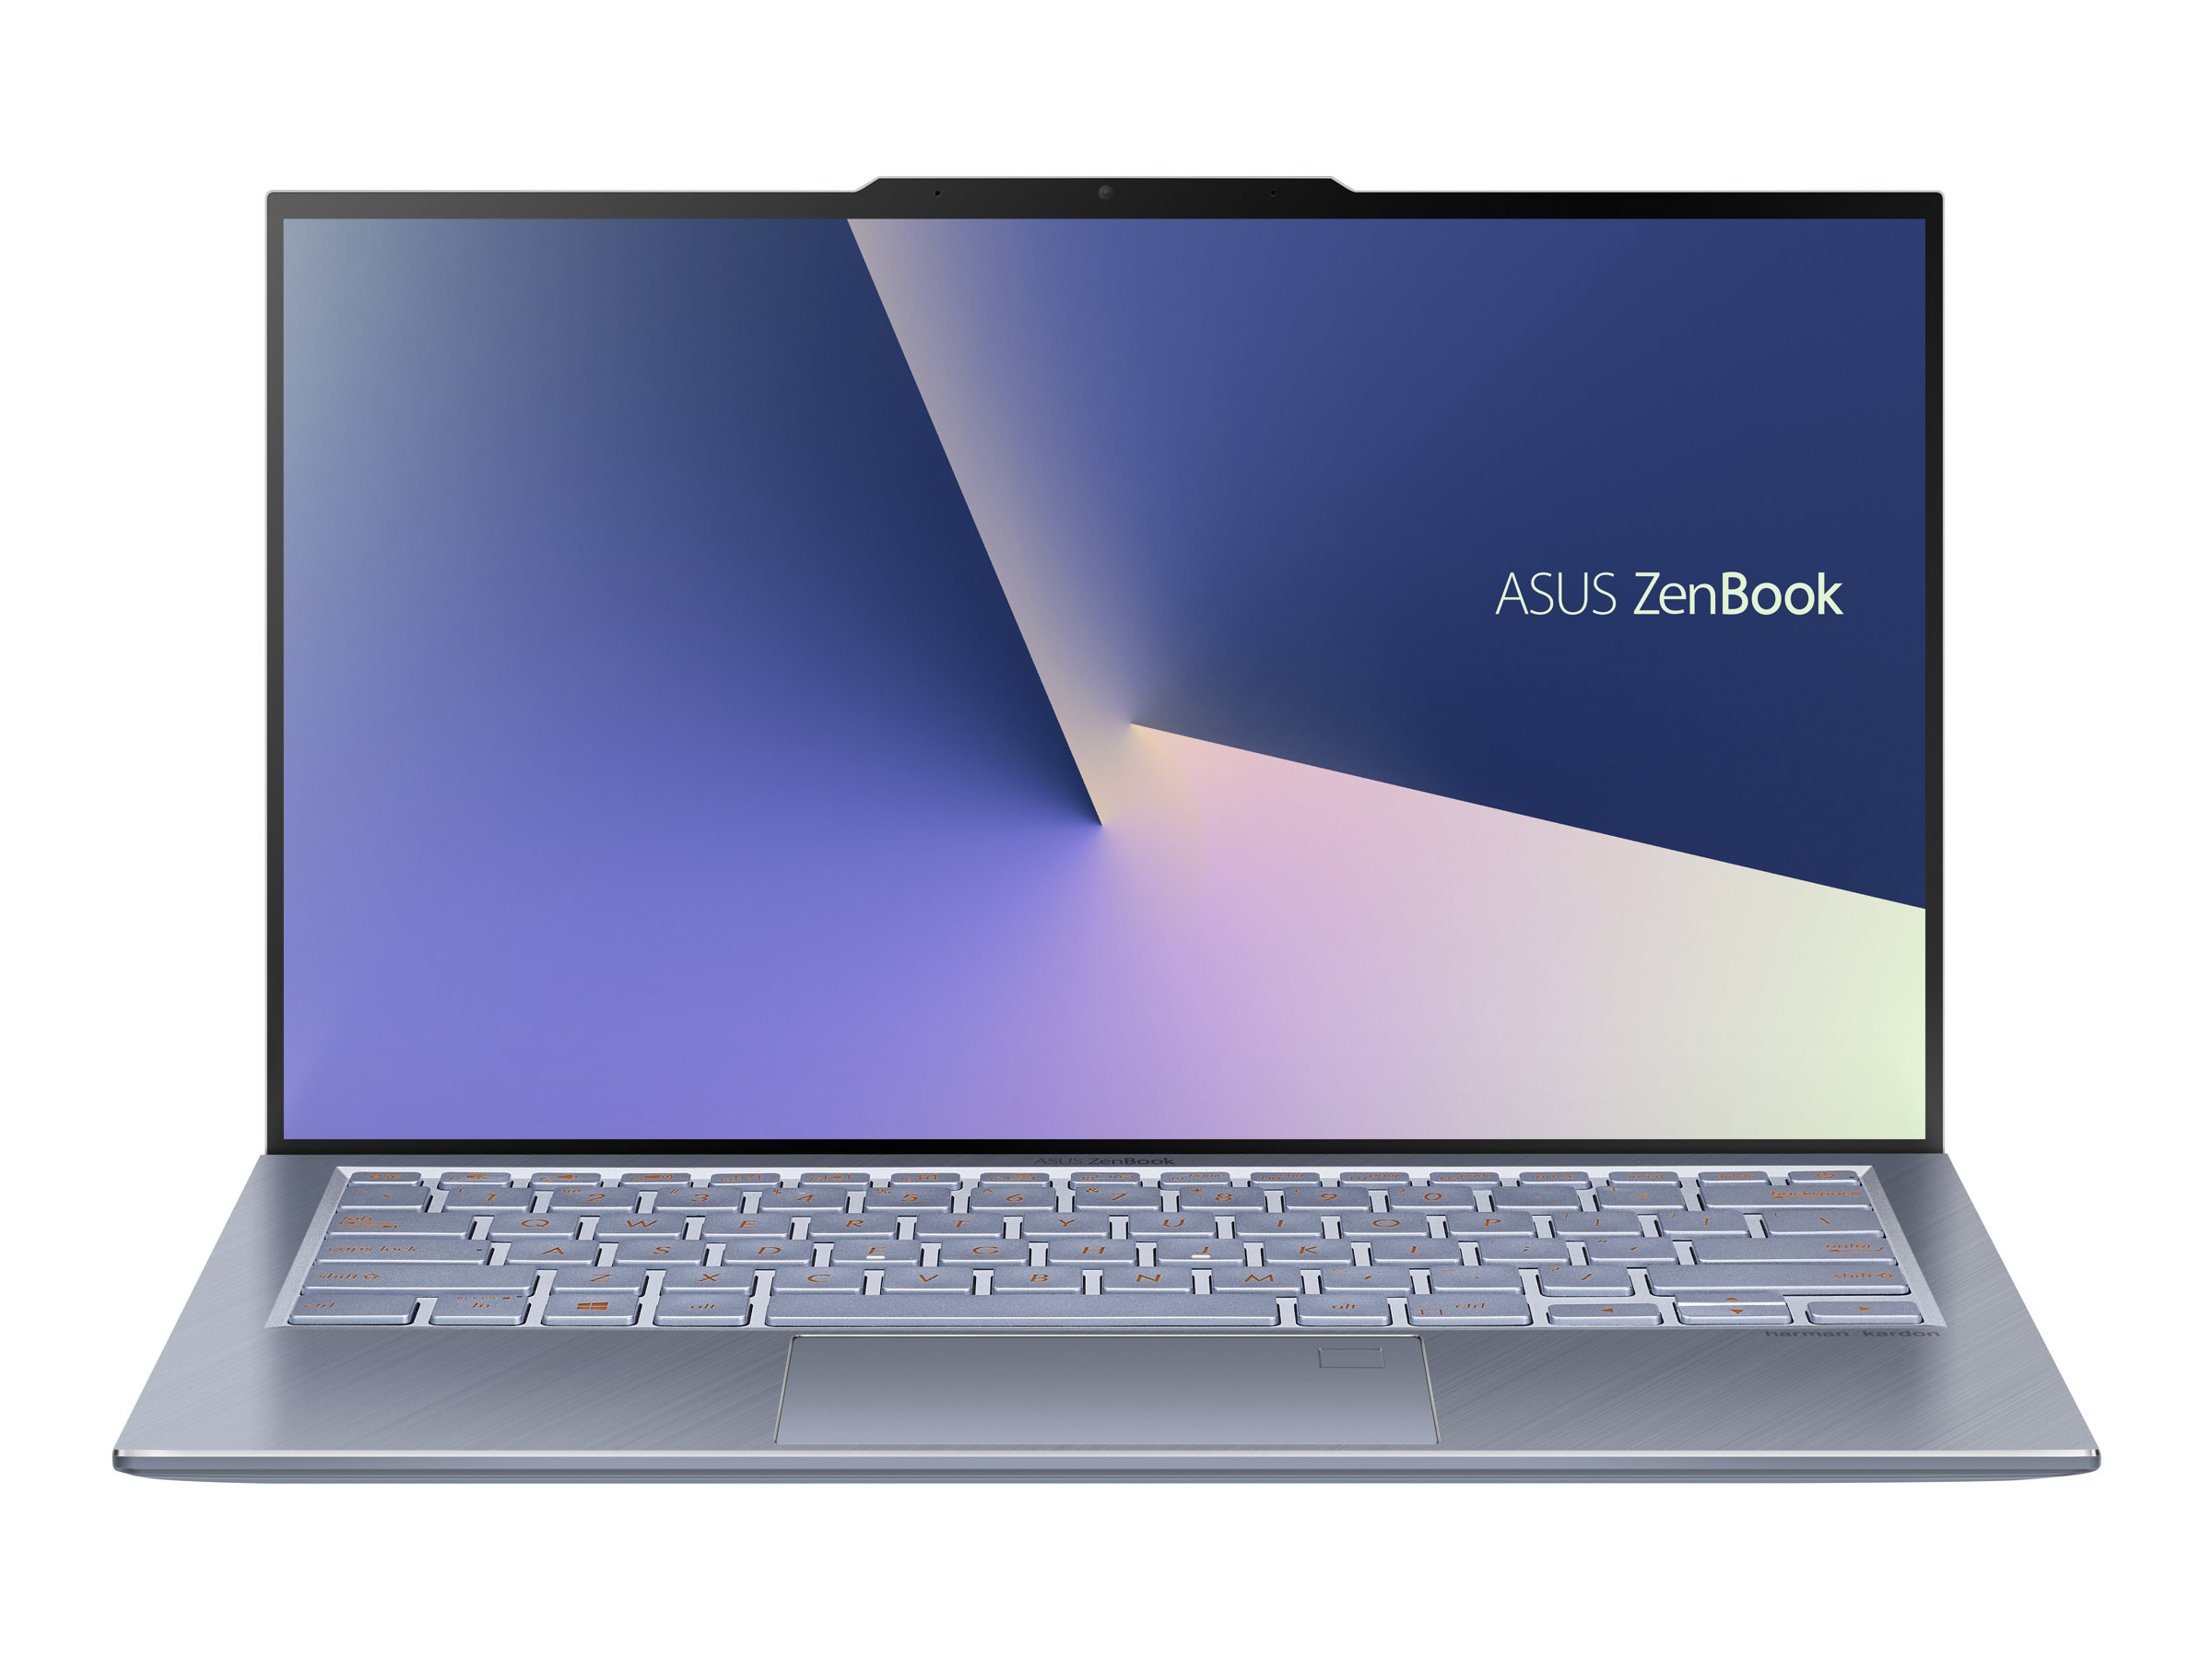 ASUS ZenBook S13 UX392FN (AB006T)